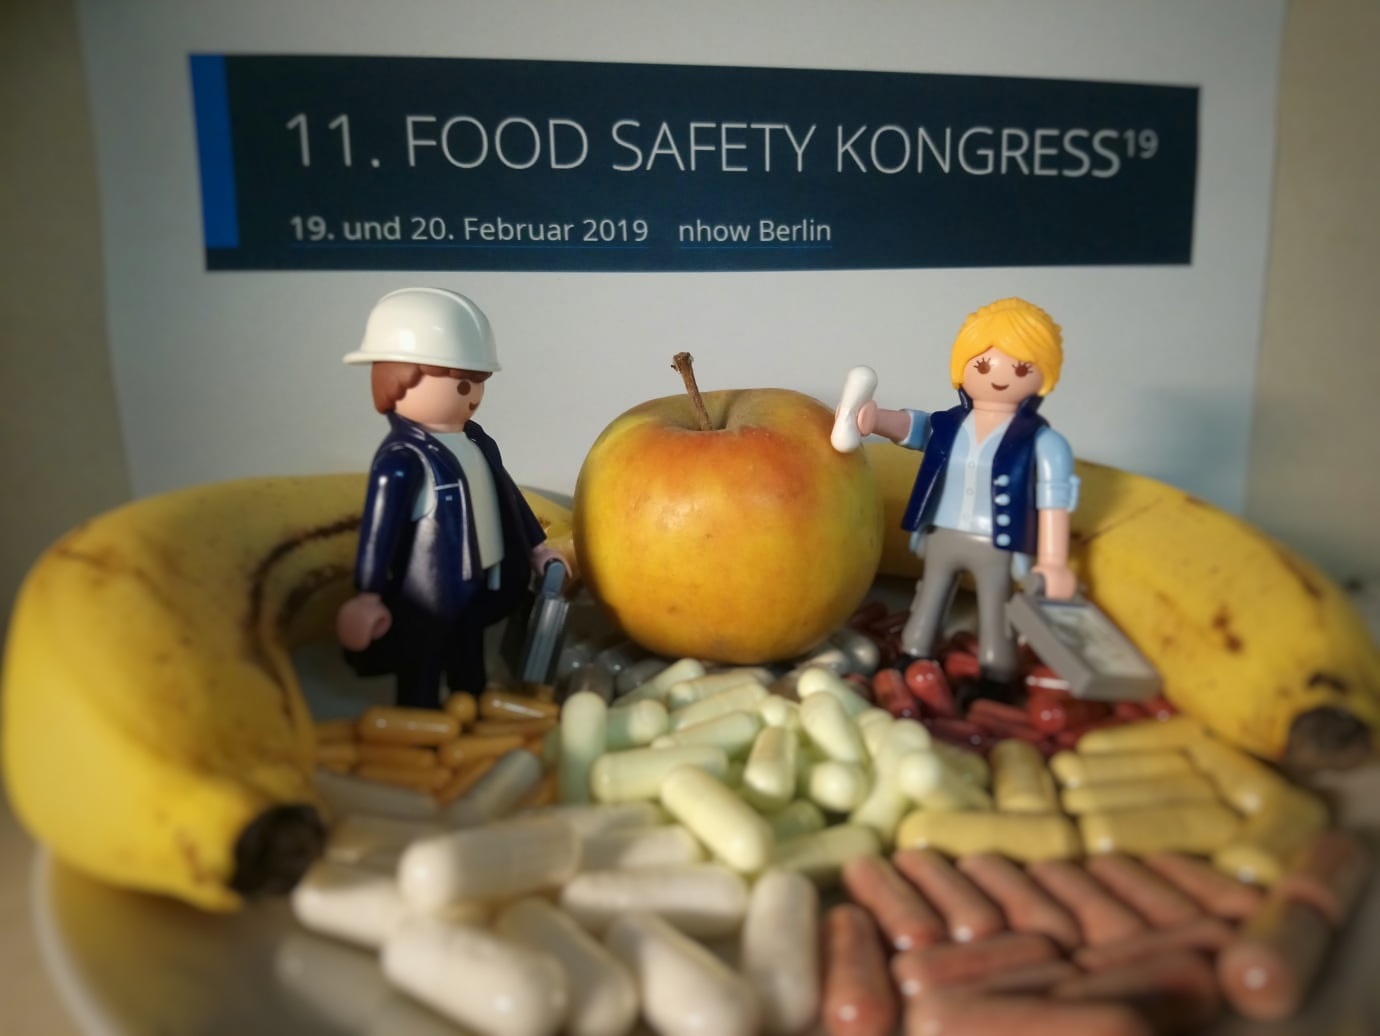 11. Food Safety Kongress in Berlin 